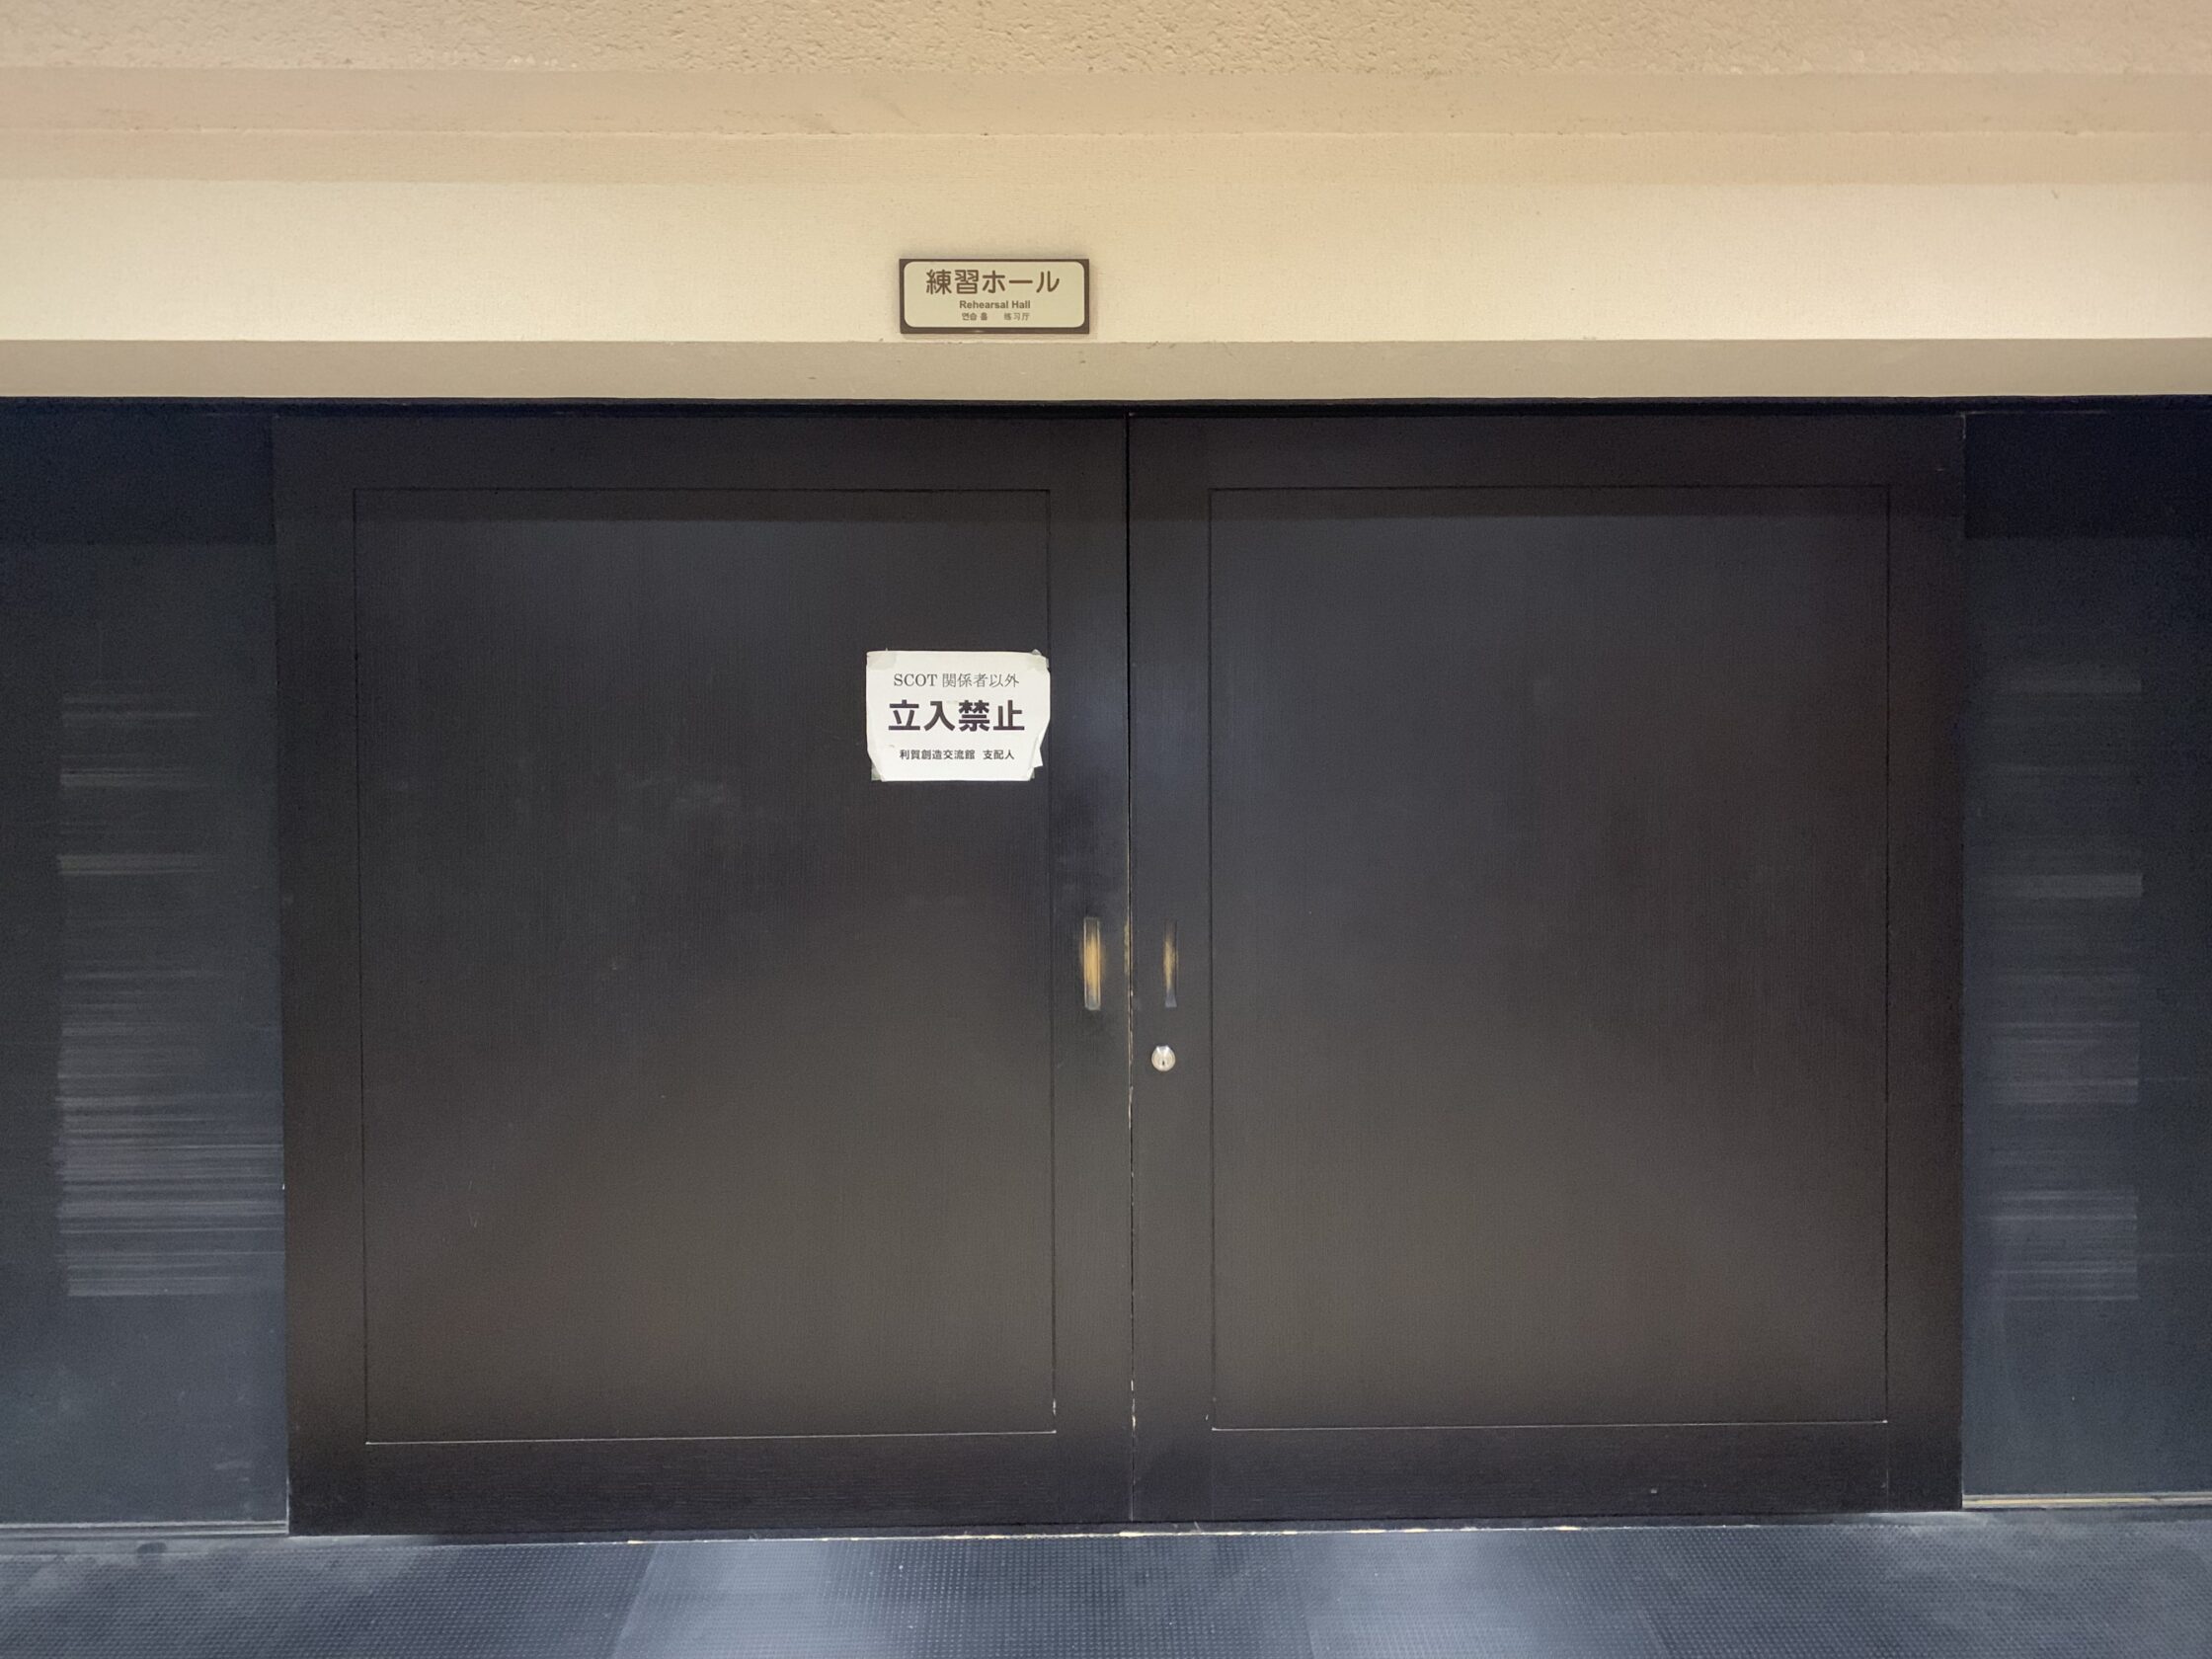 una porta a due battenti nera chiusa con un cartello che in giapponese indica la sala come proprietà della SCOT e un altro cartello sopra il muro che dichiara in inglese e giapponese "sala prove"